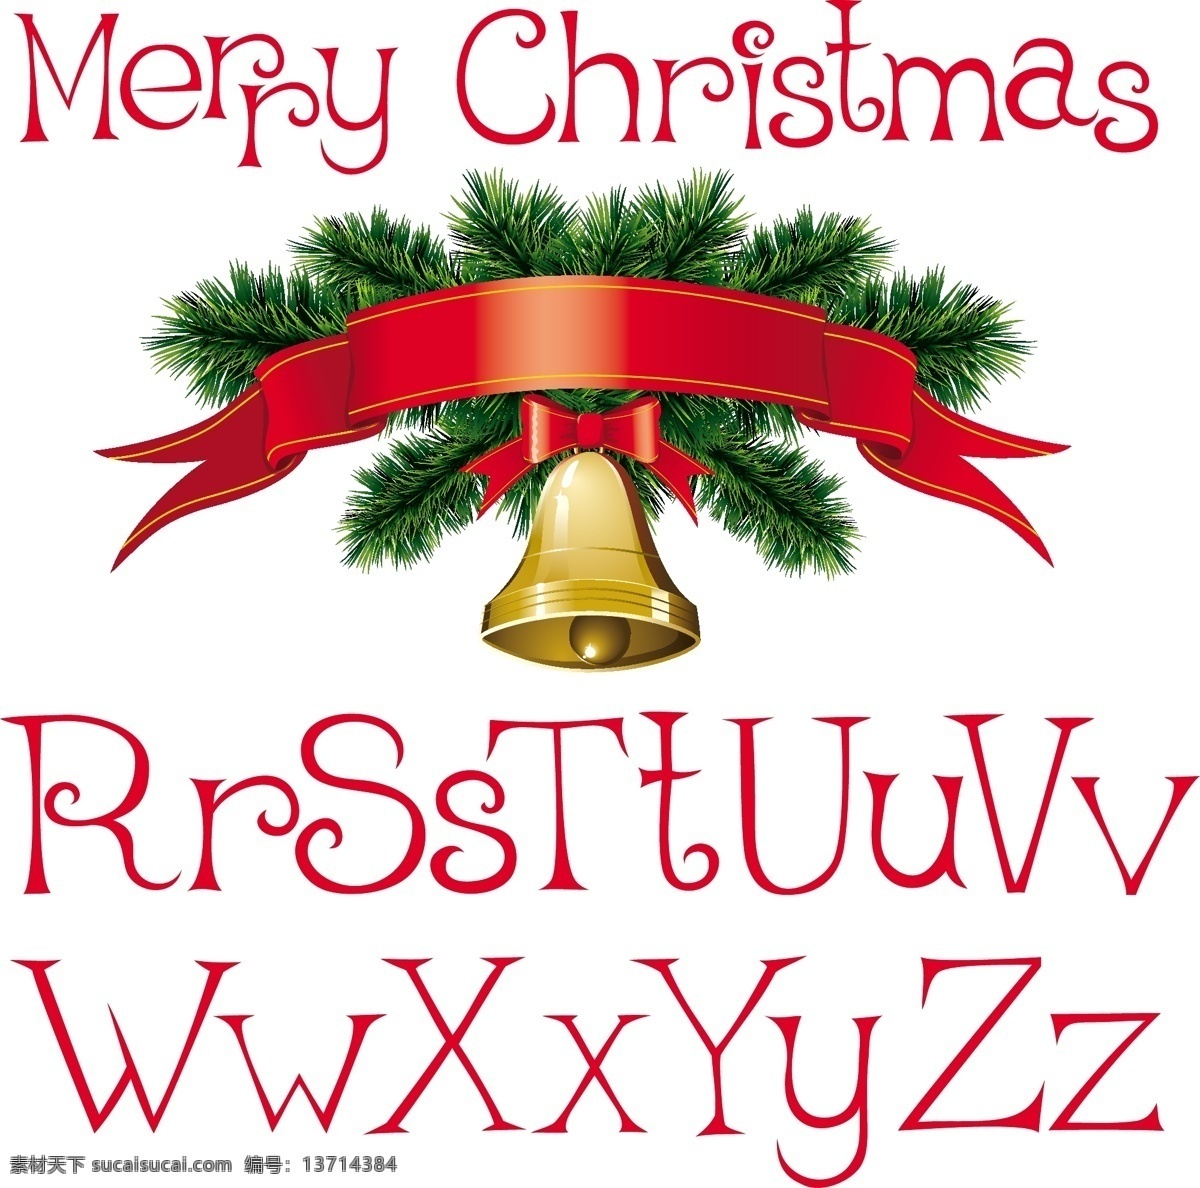 圣诞节 矢量 字符 免费矢量 矢量圣诞节 数字 圣诞节的字母 免费 自由的圣诞节 圣诞图形向量 向量 圣诞 其他矢量图